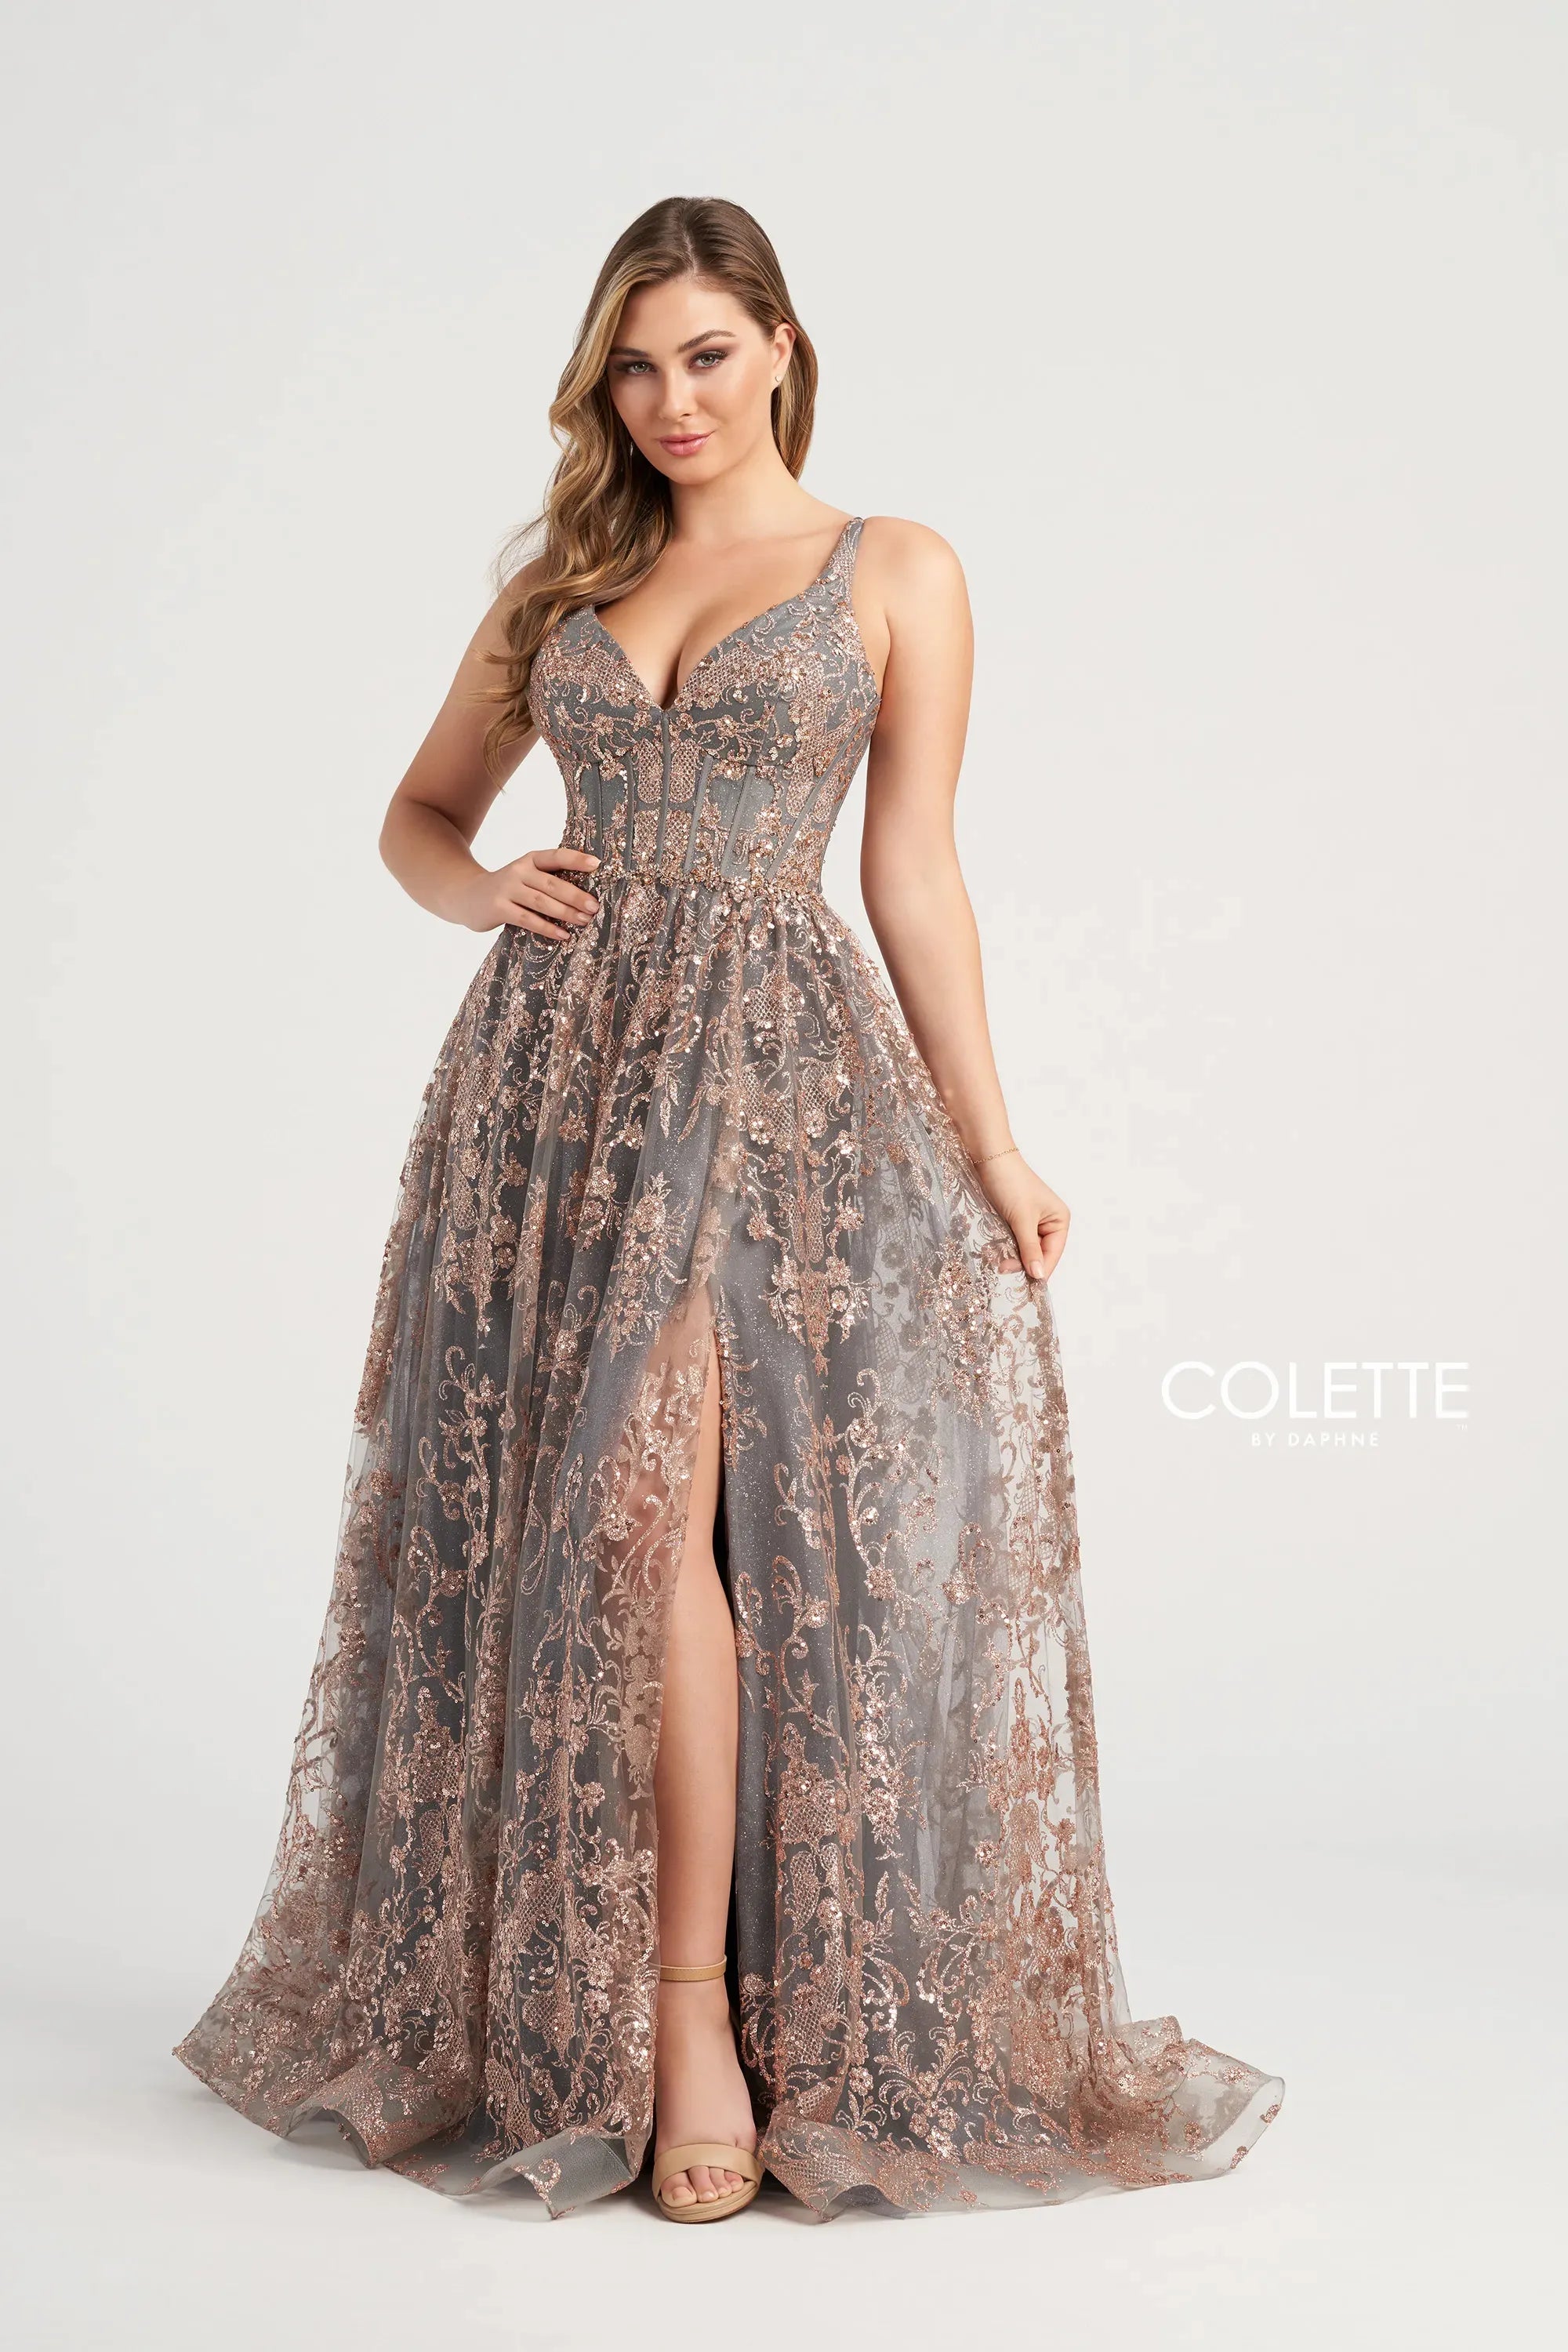 Colette CL5134